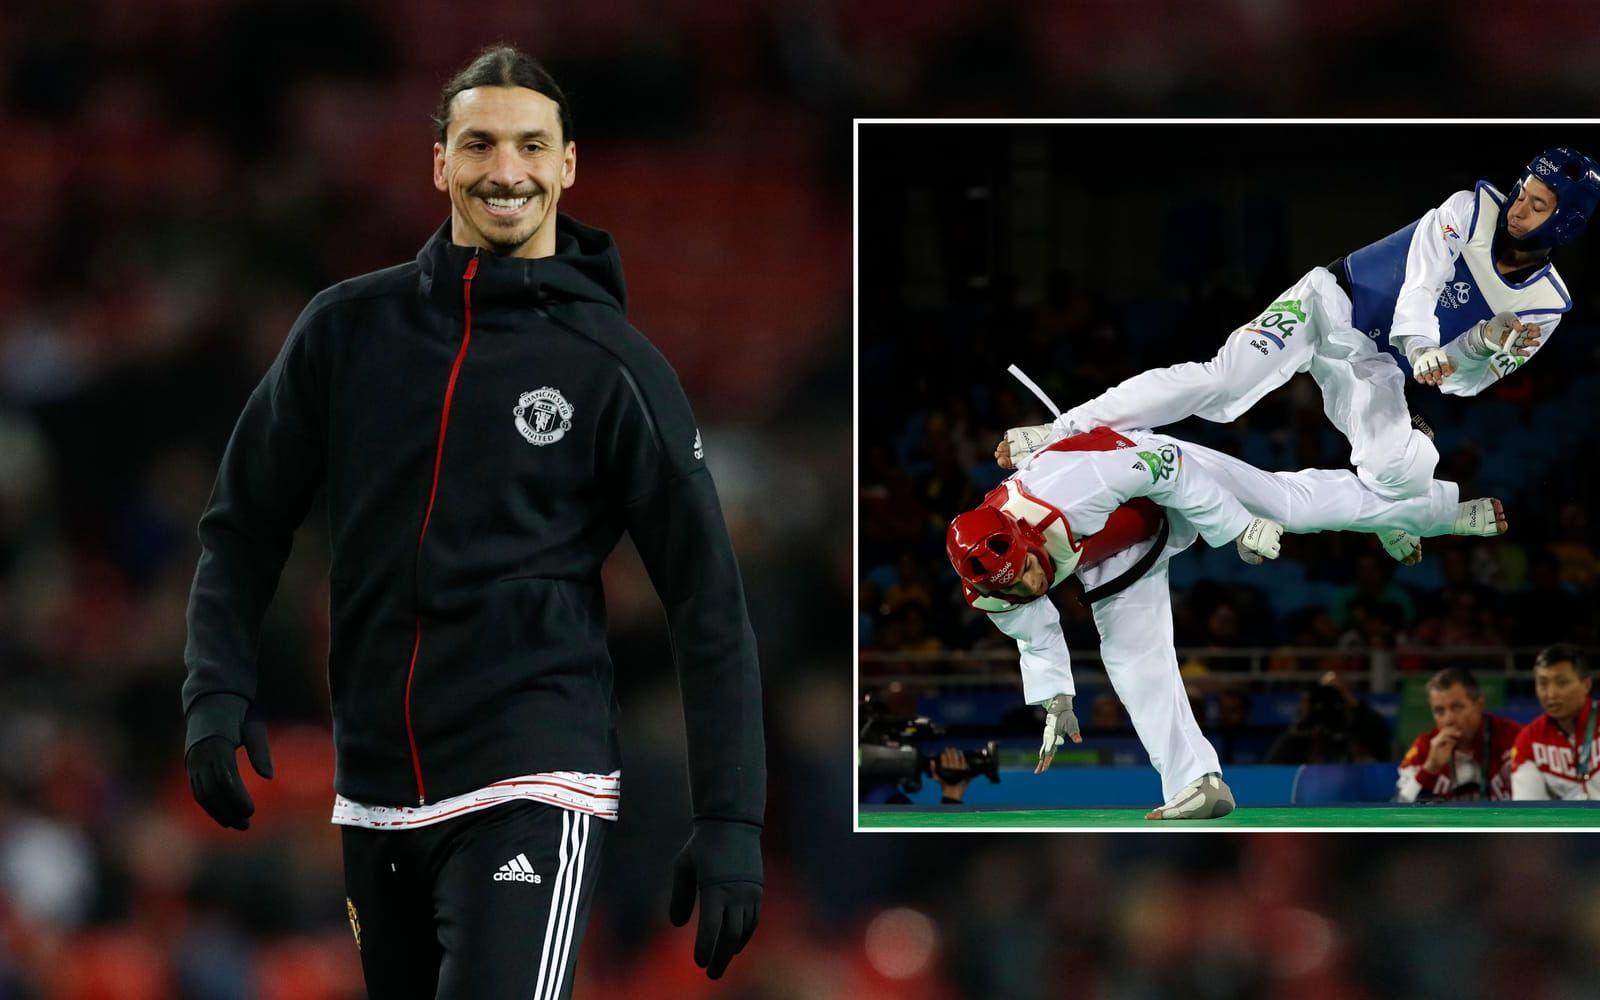 4. Ibrahimovic ett stort intresse för kampsport och har tidigare tränat taekwondo i flera år. Foto: Bildbyrån/TT